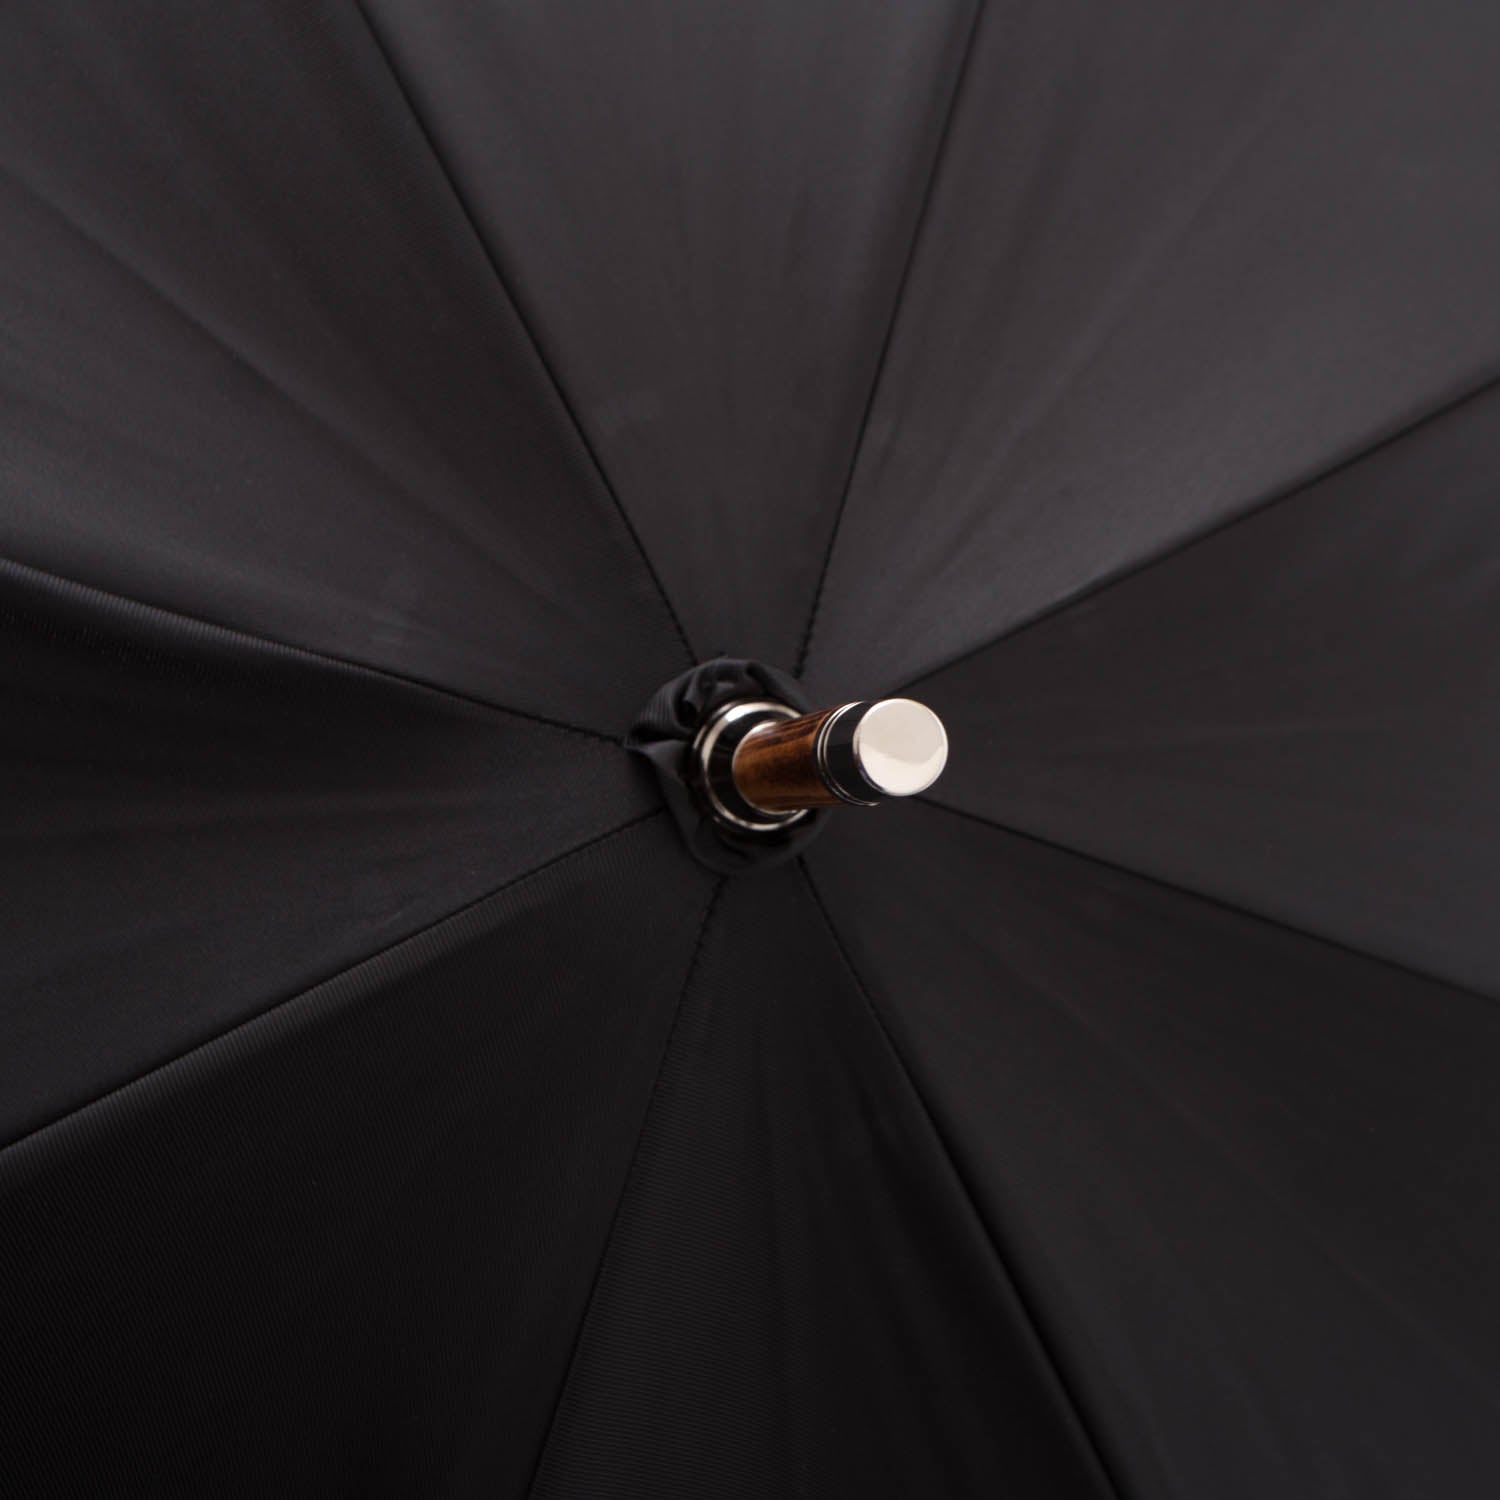 Black Doorman Umbrella with Malacca Handle